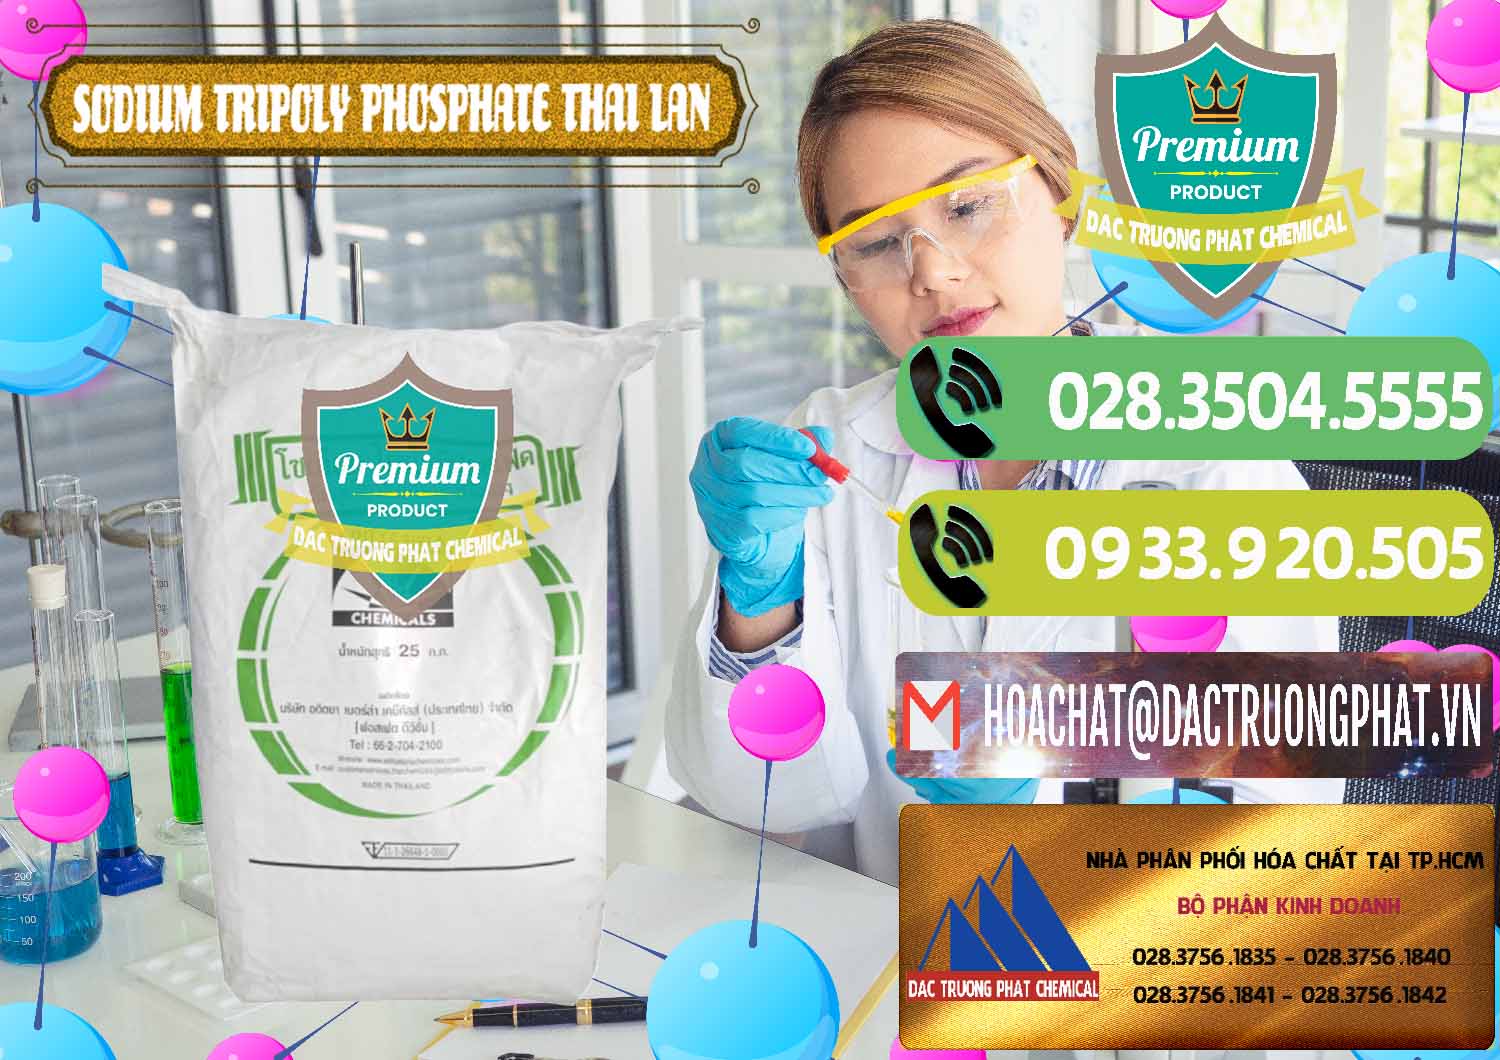 Cty chuyên cung ứng - bán Sodium Tripoly Phosphate - STPP Aditya Birla Grasim Thái Lan Thailand - 0421 - Kinh doanh - phân phối hóa chất tại TP.HCM - hoachatmientay.vn